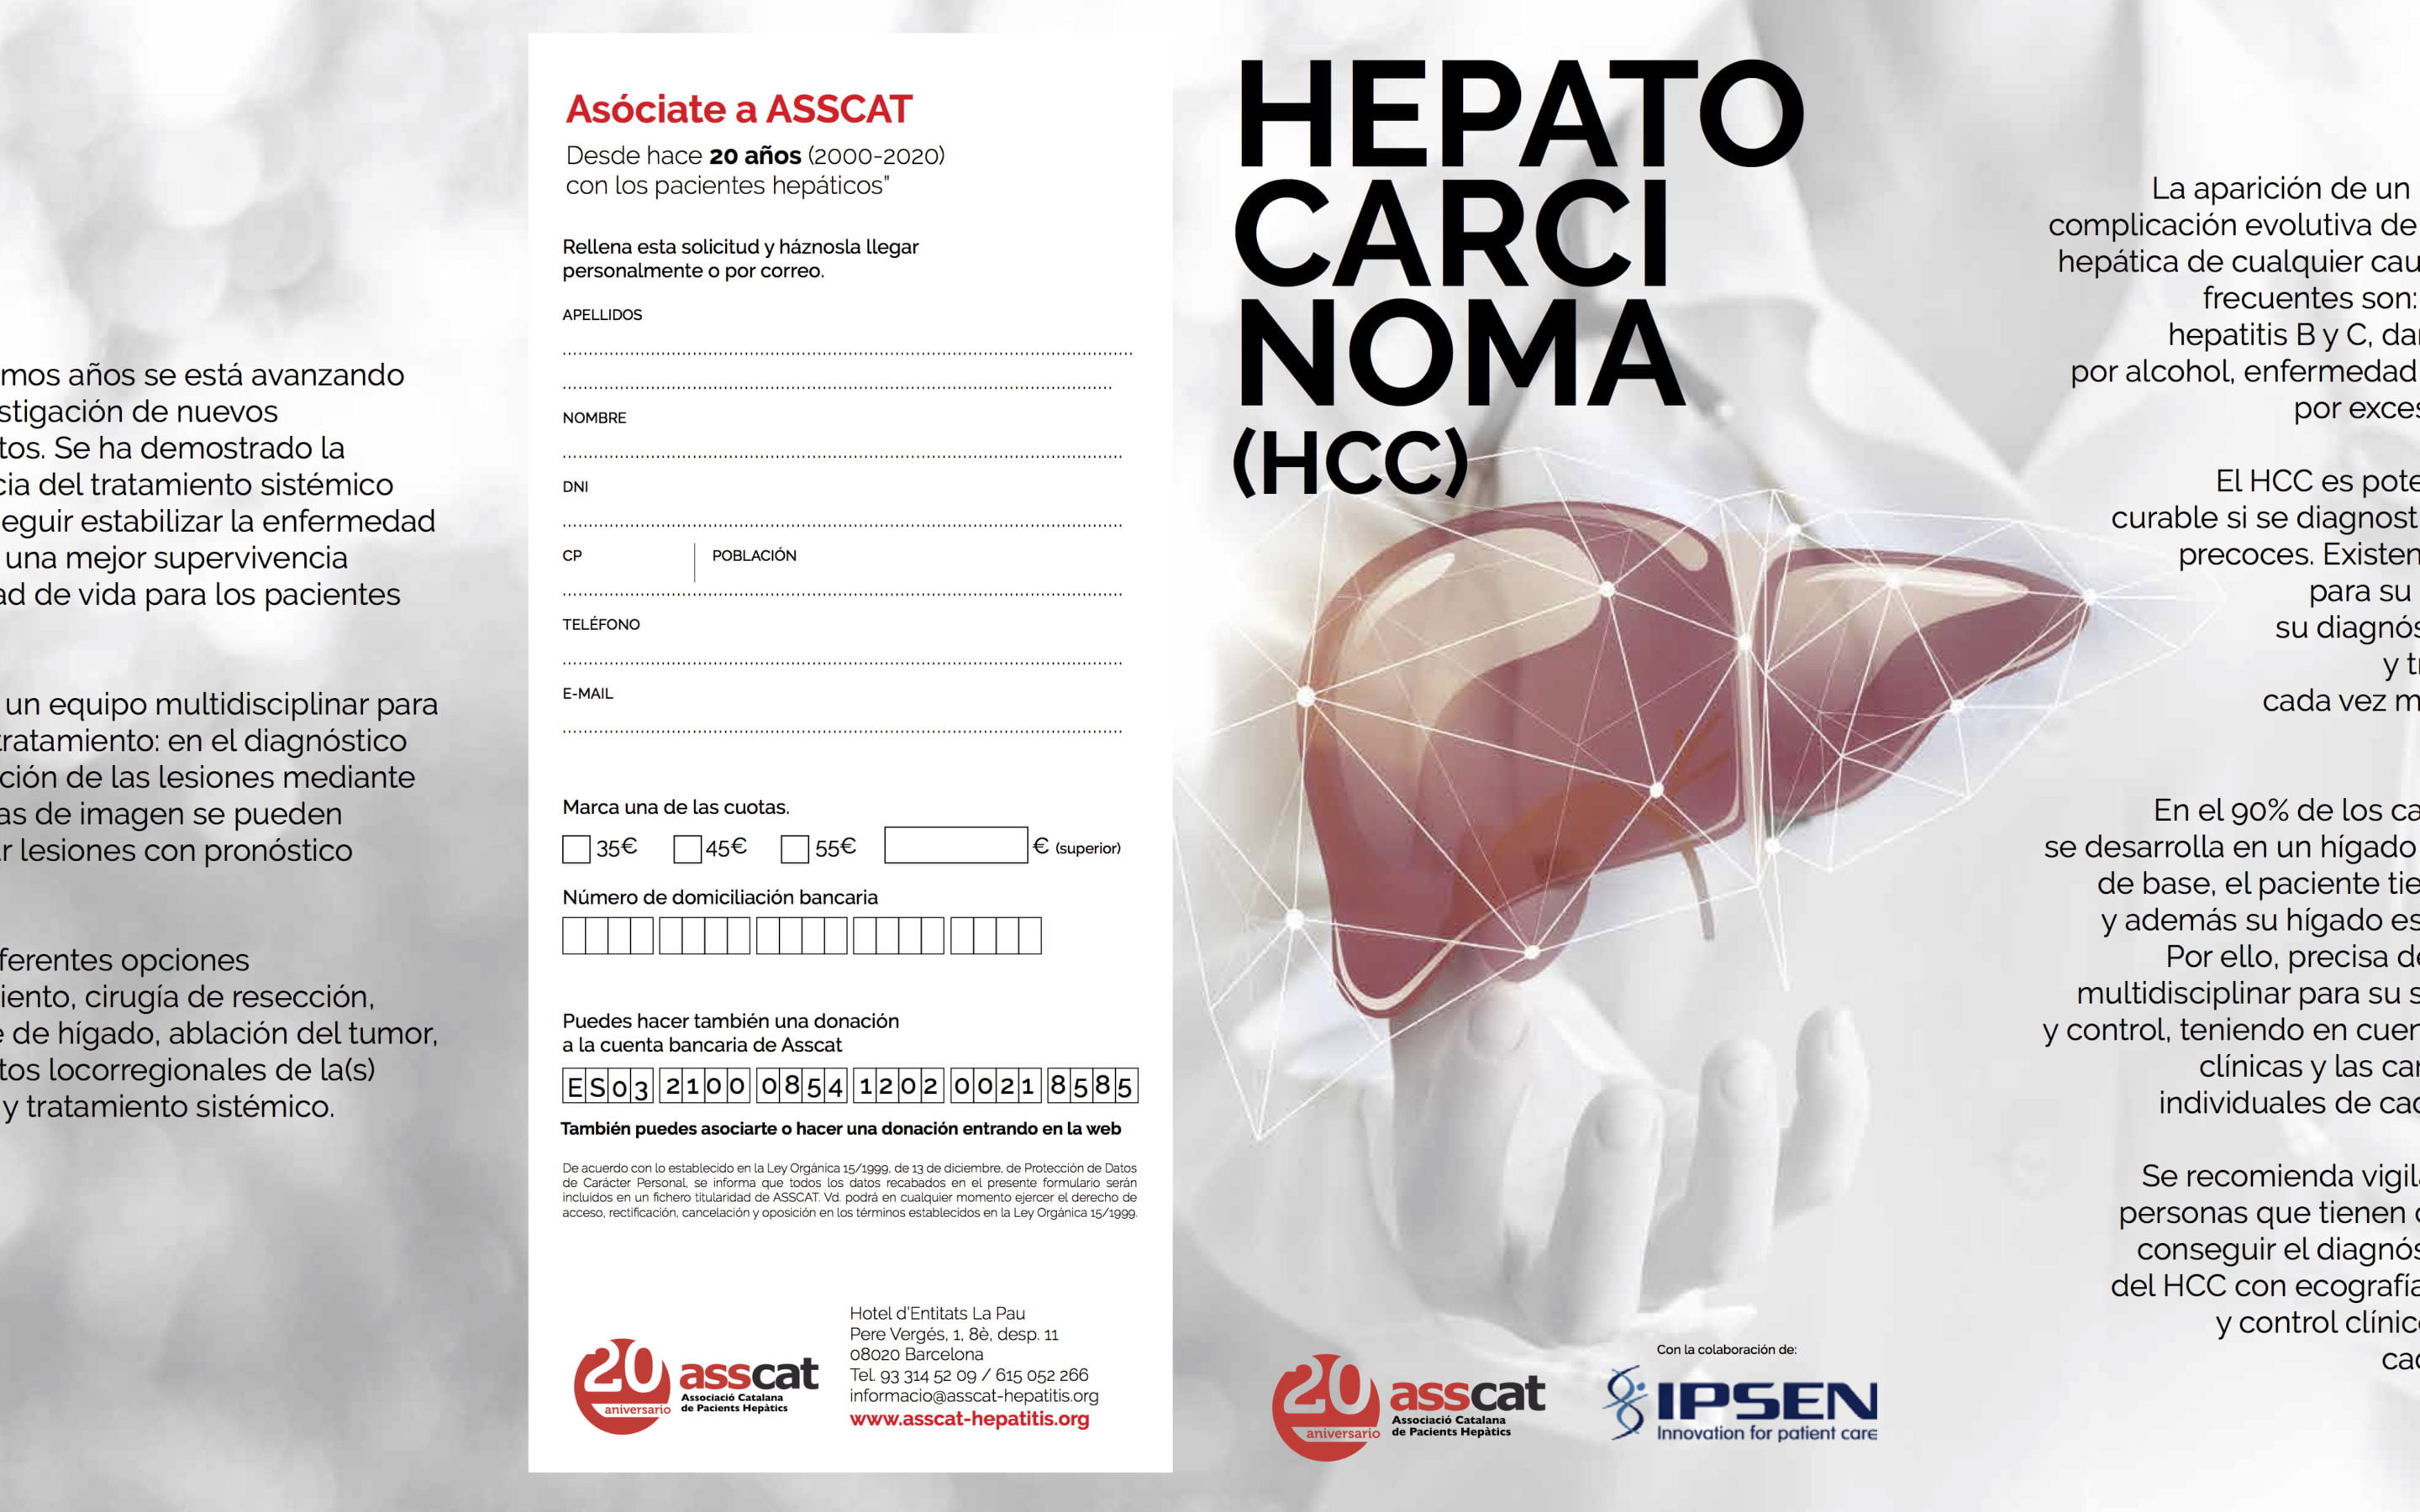 Folleto informativo sobre el Hepatocarcinoma (HCC)